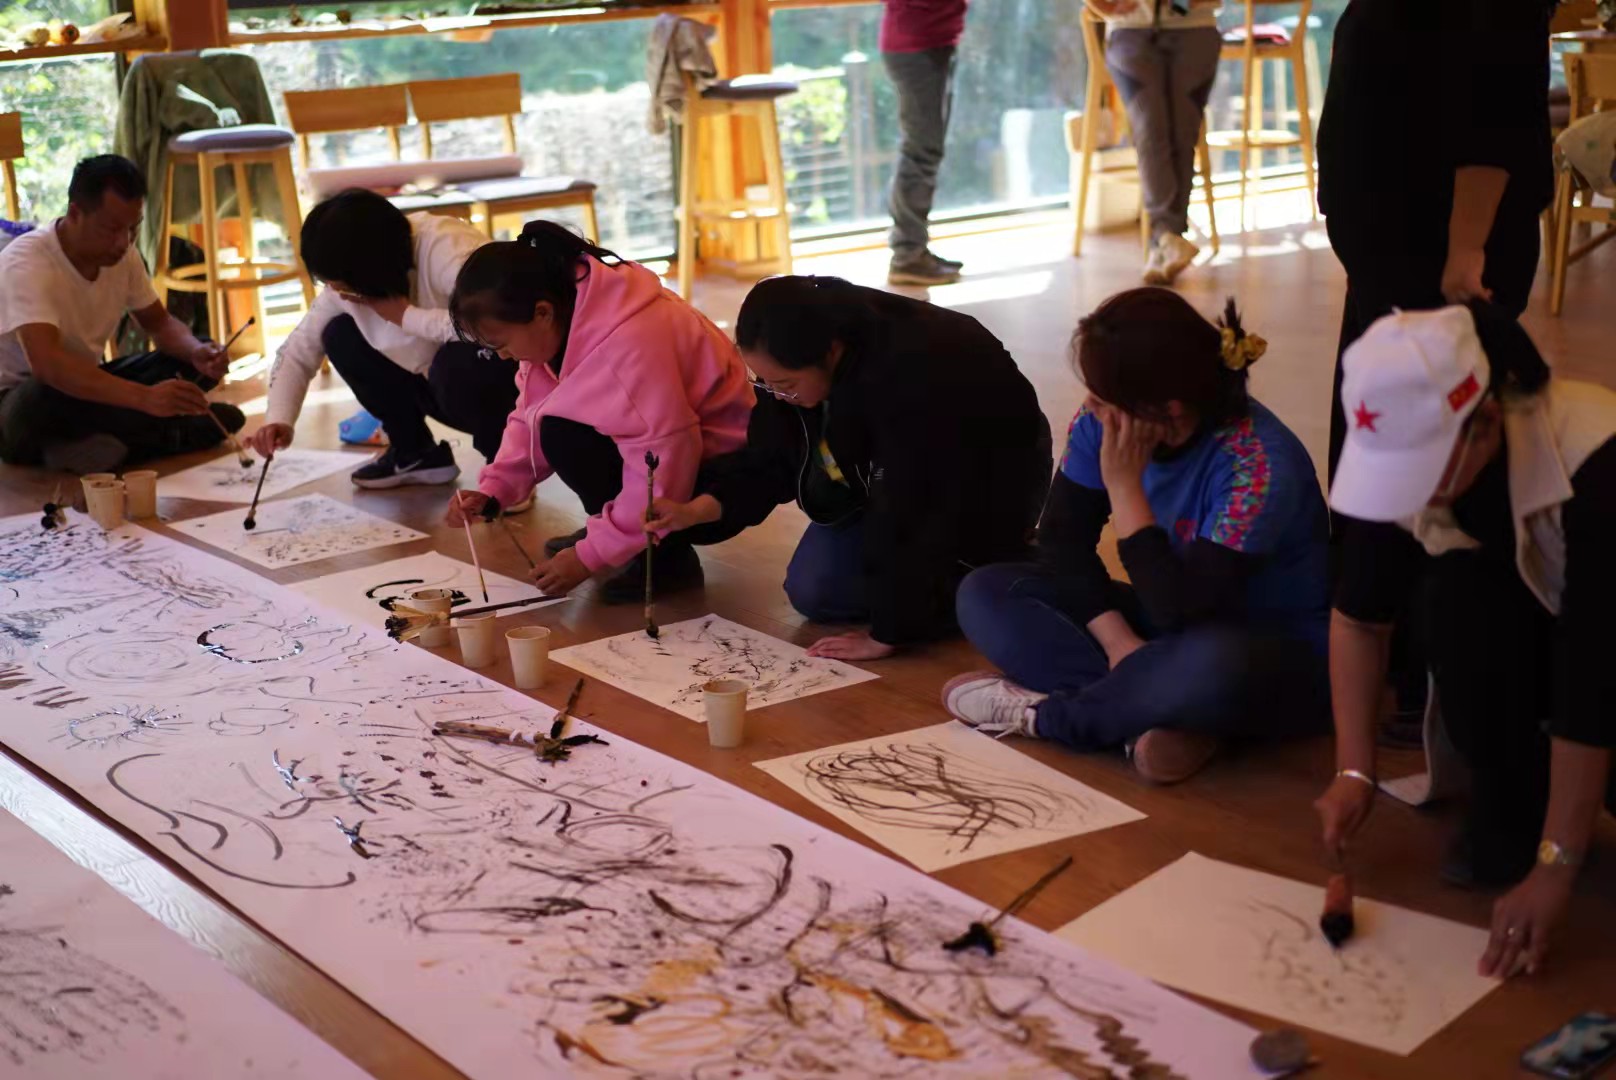 丽江老君山滇金丝猴公益保护地 | 2021年工作报告